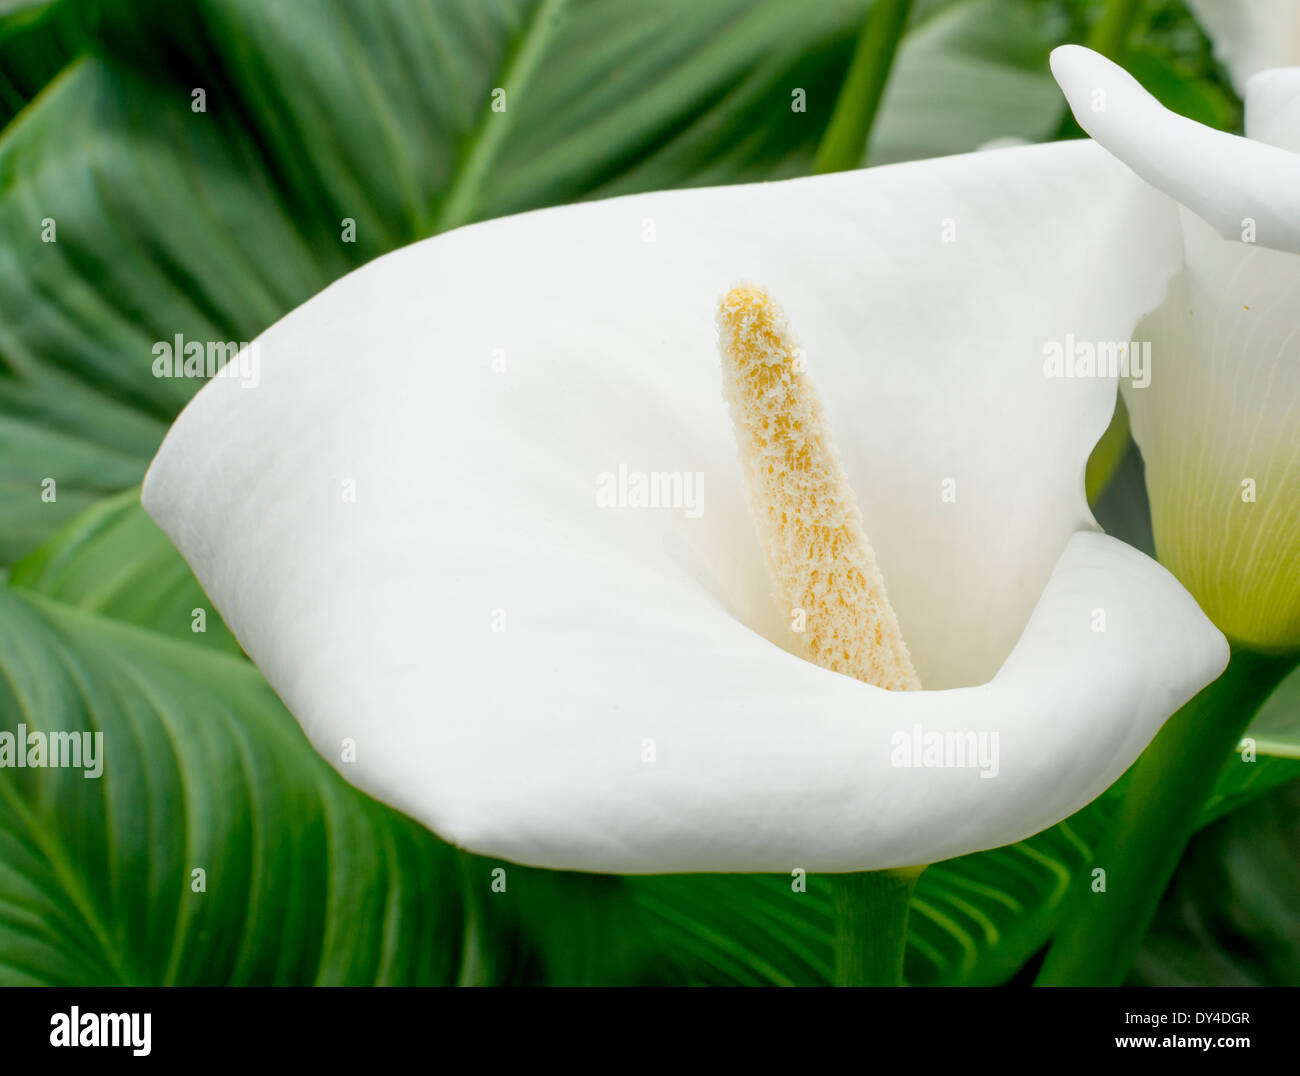 Blanco lirio de agua del primer plano. Cala Blanca closeup con polen sobre el pistilo rodeado por hojas verdes. Foto de stock